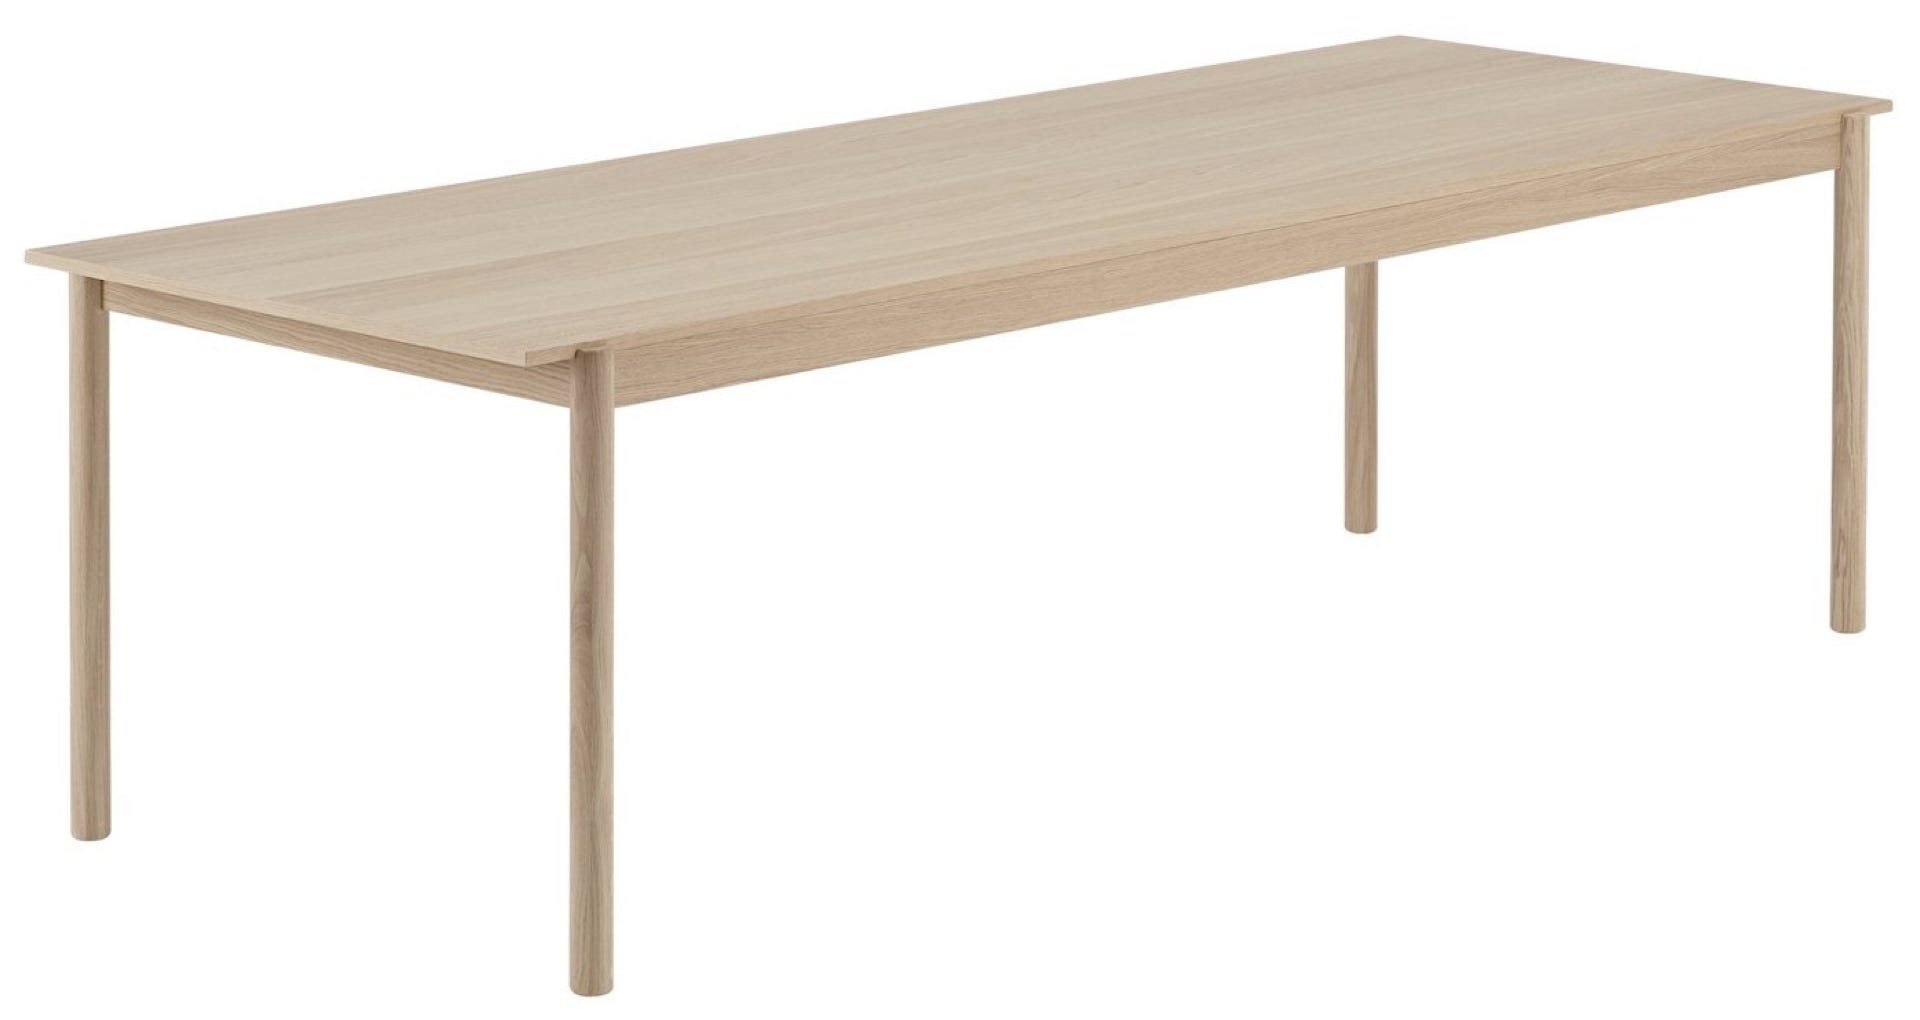 Table et Banc Linear Wood Thomas Bentzen, 2019